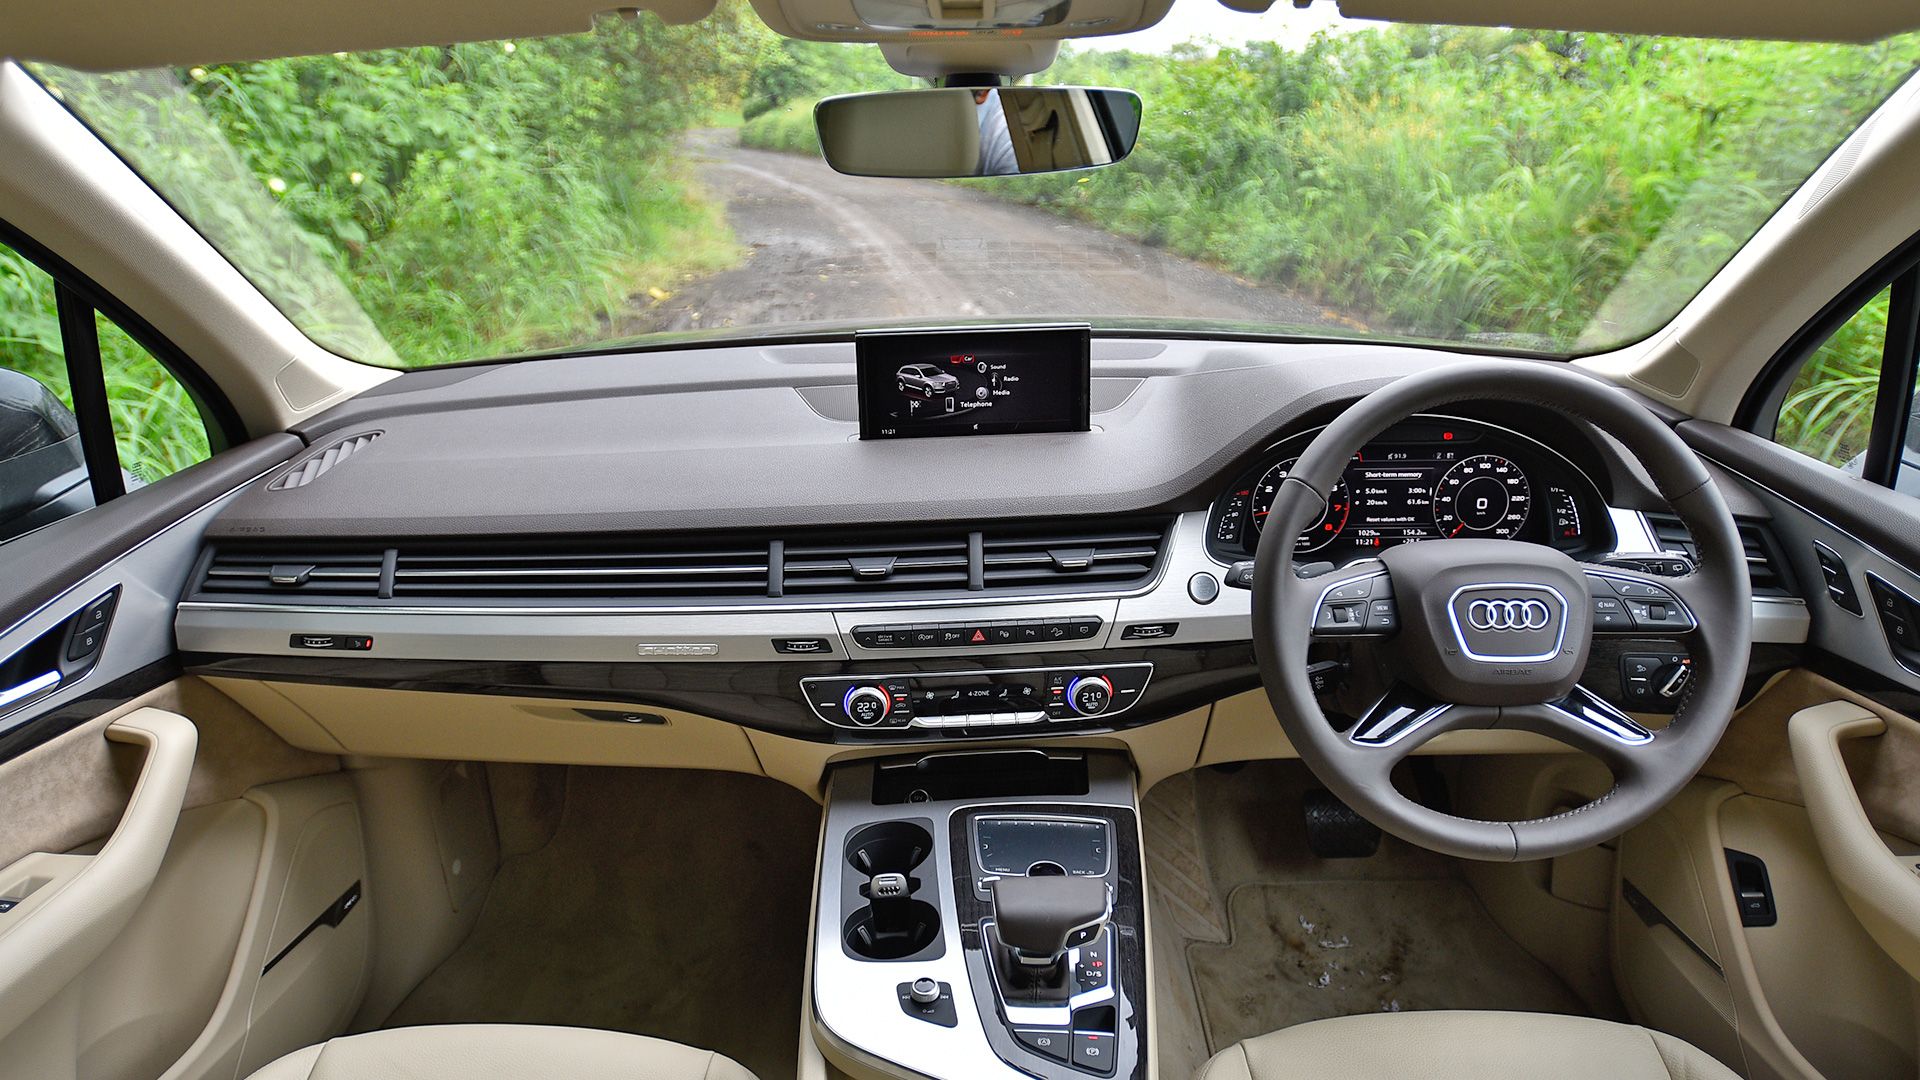 Audi Q7 2017 40 TFSI Premium Plus Interior Car Photo